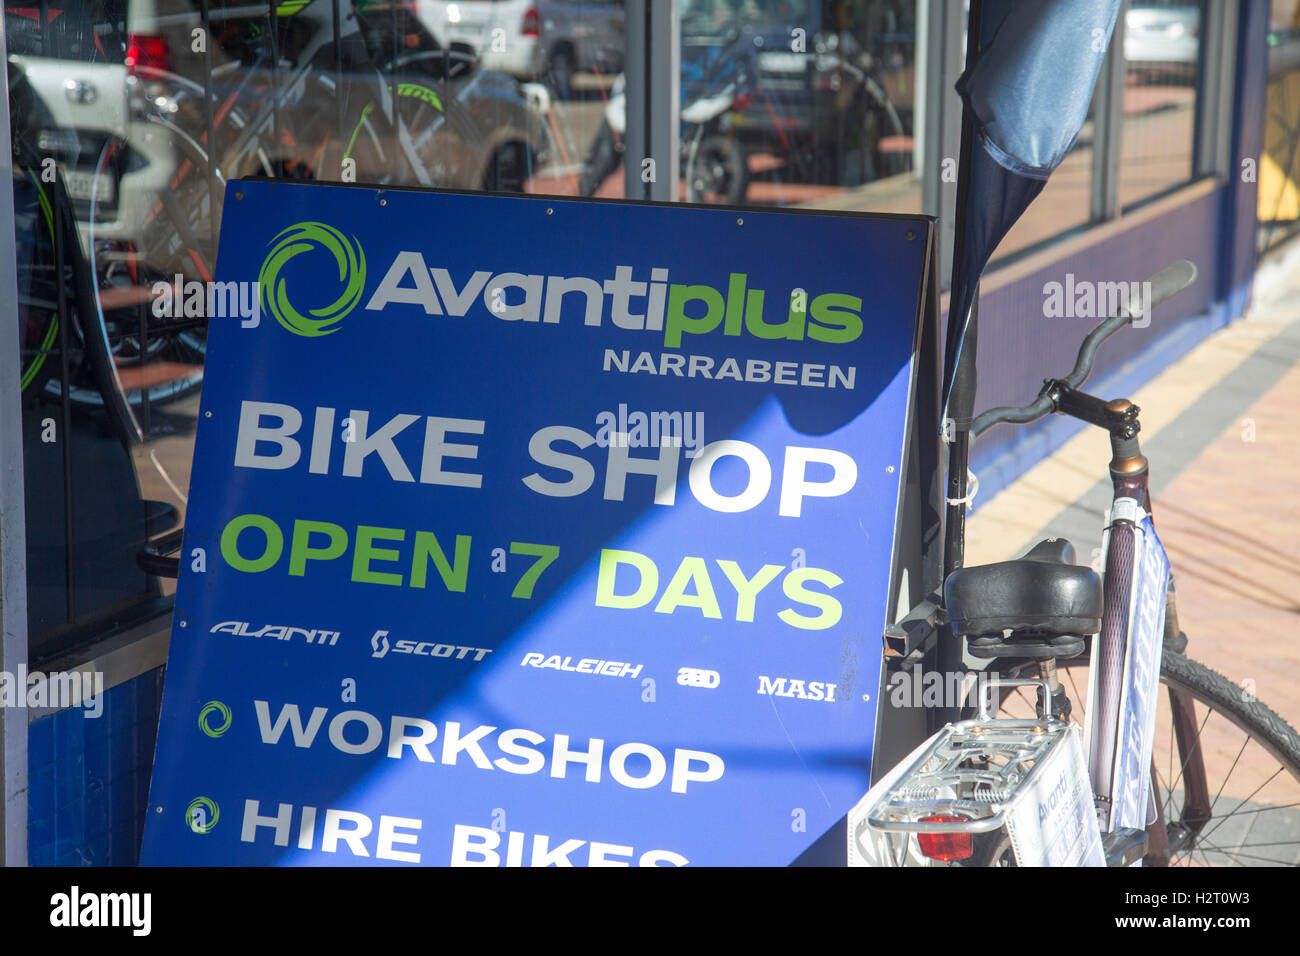 Avanti plus magasin de bicyclettes à Narrabeen, North Sydney Banque D'Images